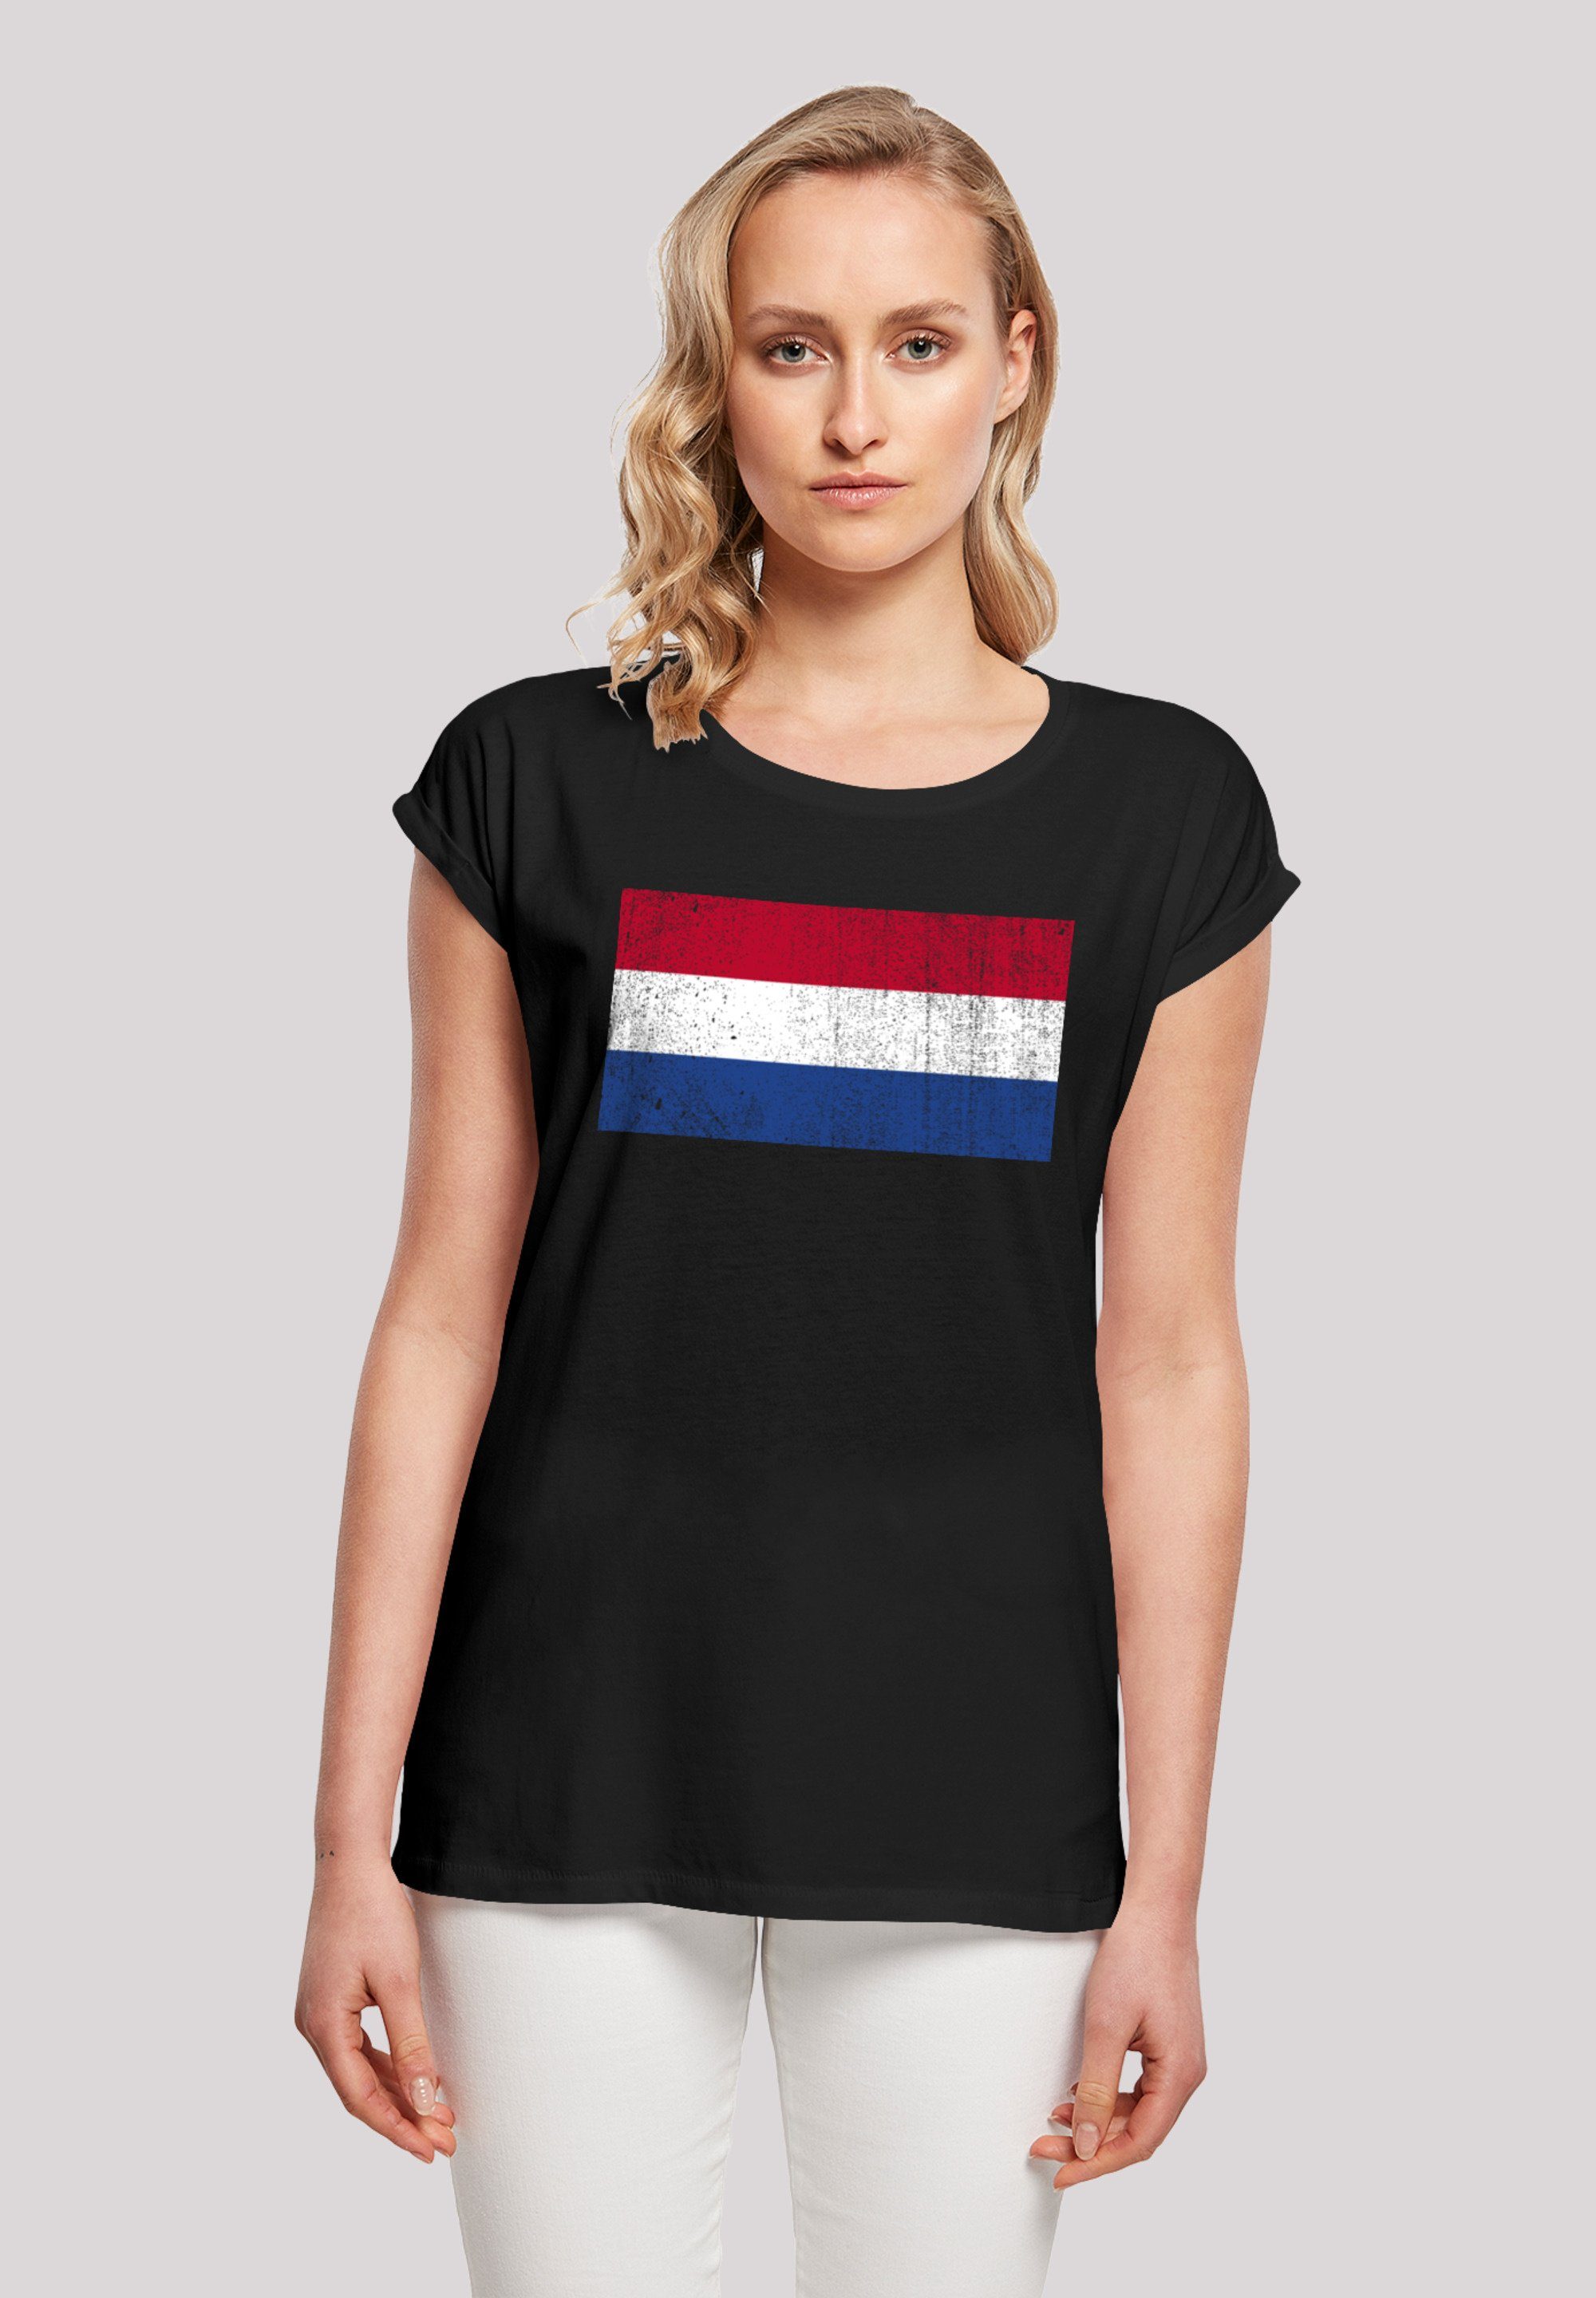 distressed Holland trägt Netherlands T-Shirt und groß Das F4NT4STIC M Model Print, 170 Größe ist NIederlande Flagge cm